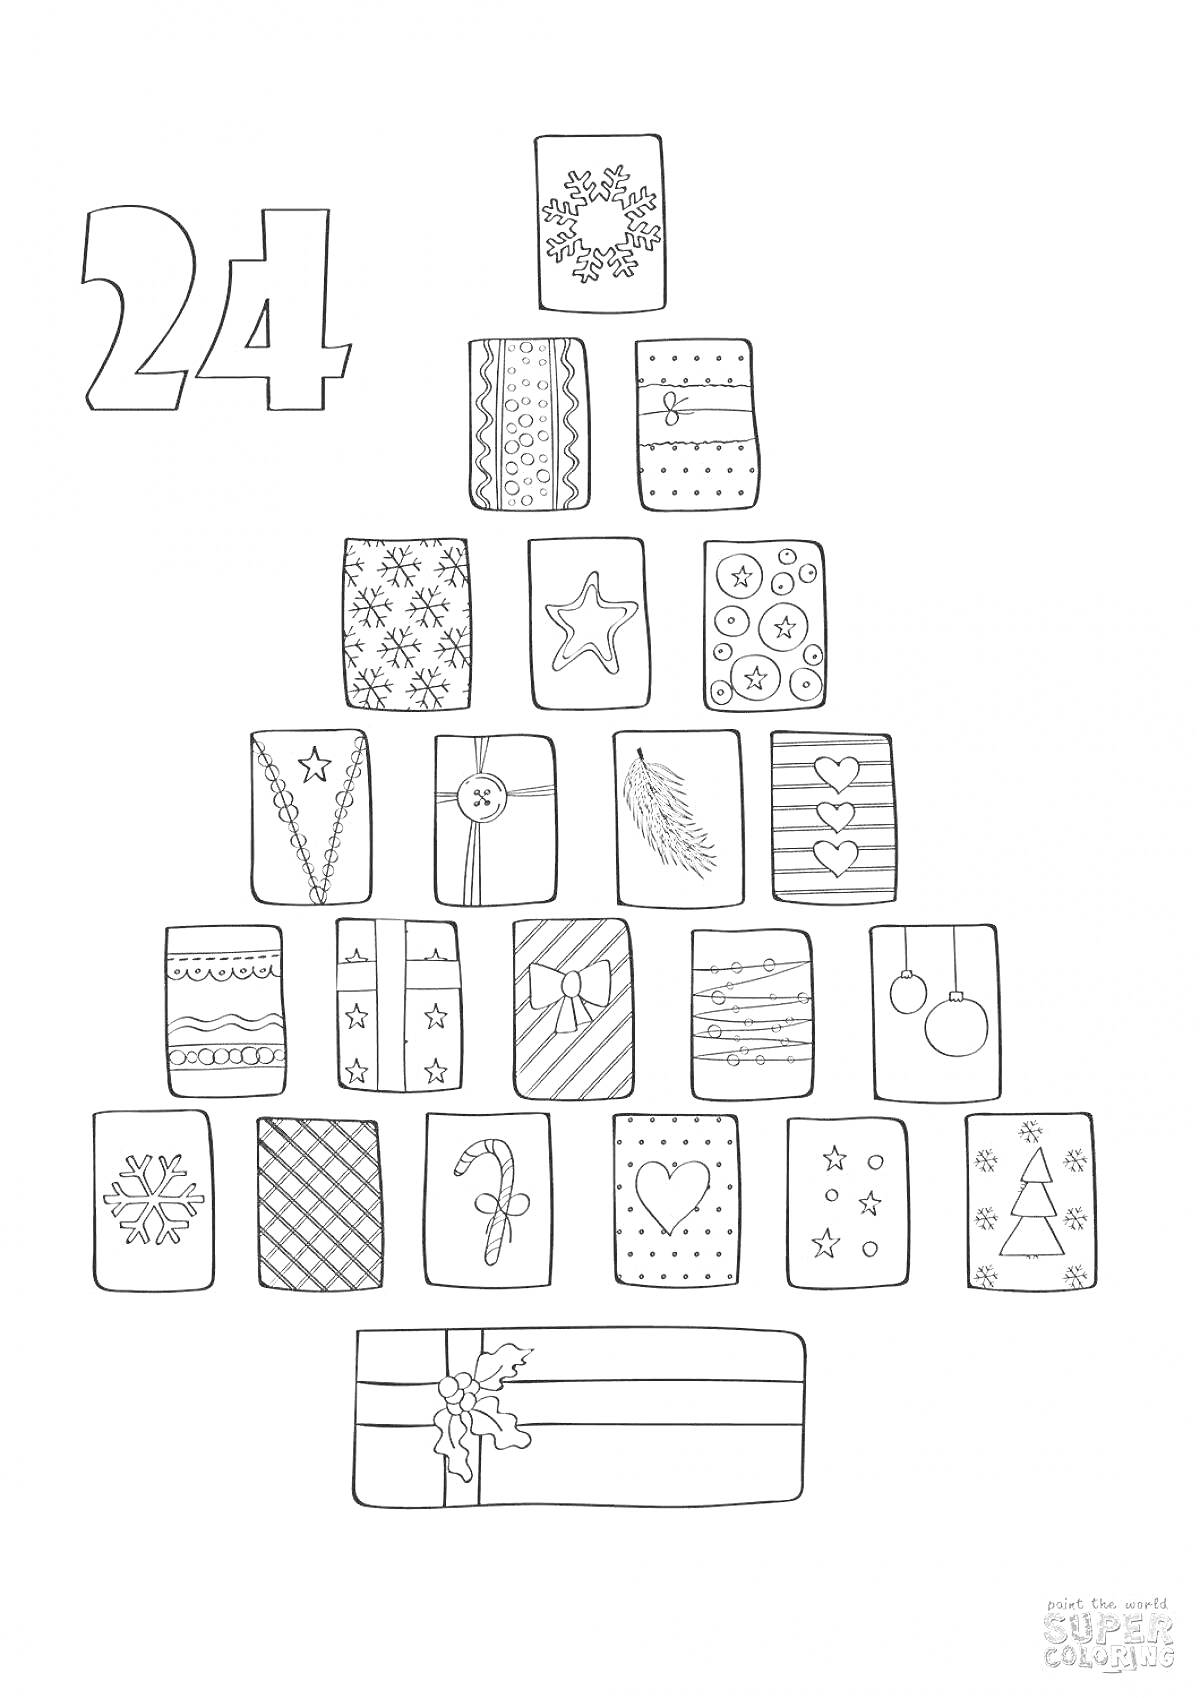 Раскраска Адвент календарь в виде рождественской елки с 24 коробками, украшенными снежинками, звездочками, елочными шарами, сердечками, веточками и другими новогодними узорами